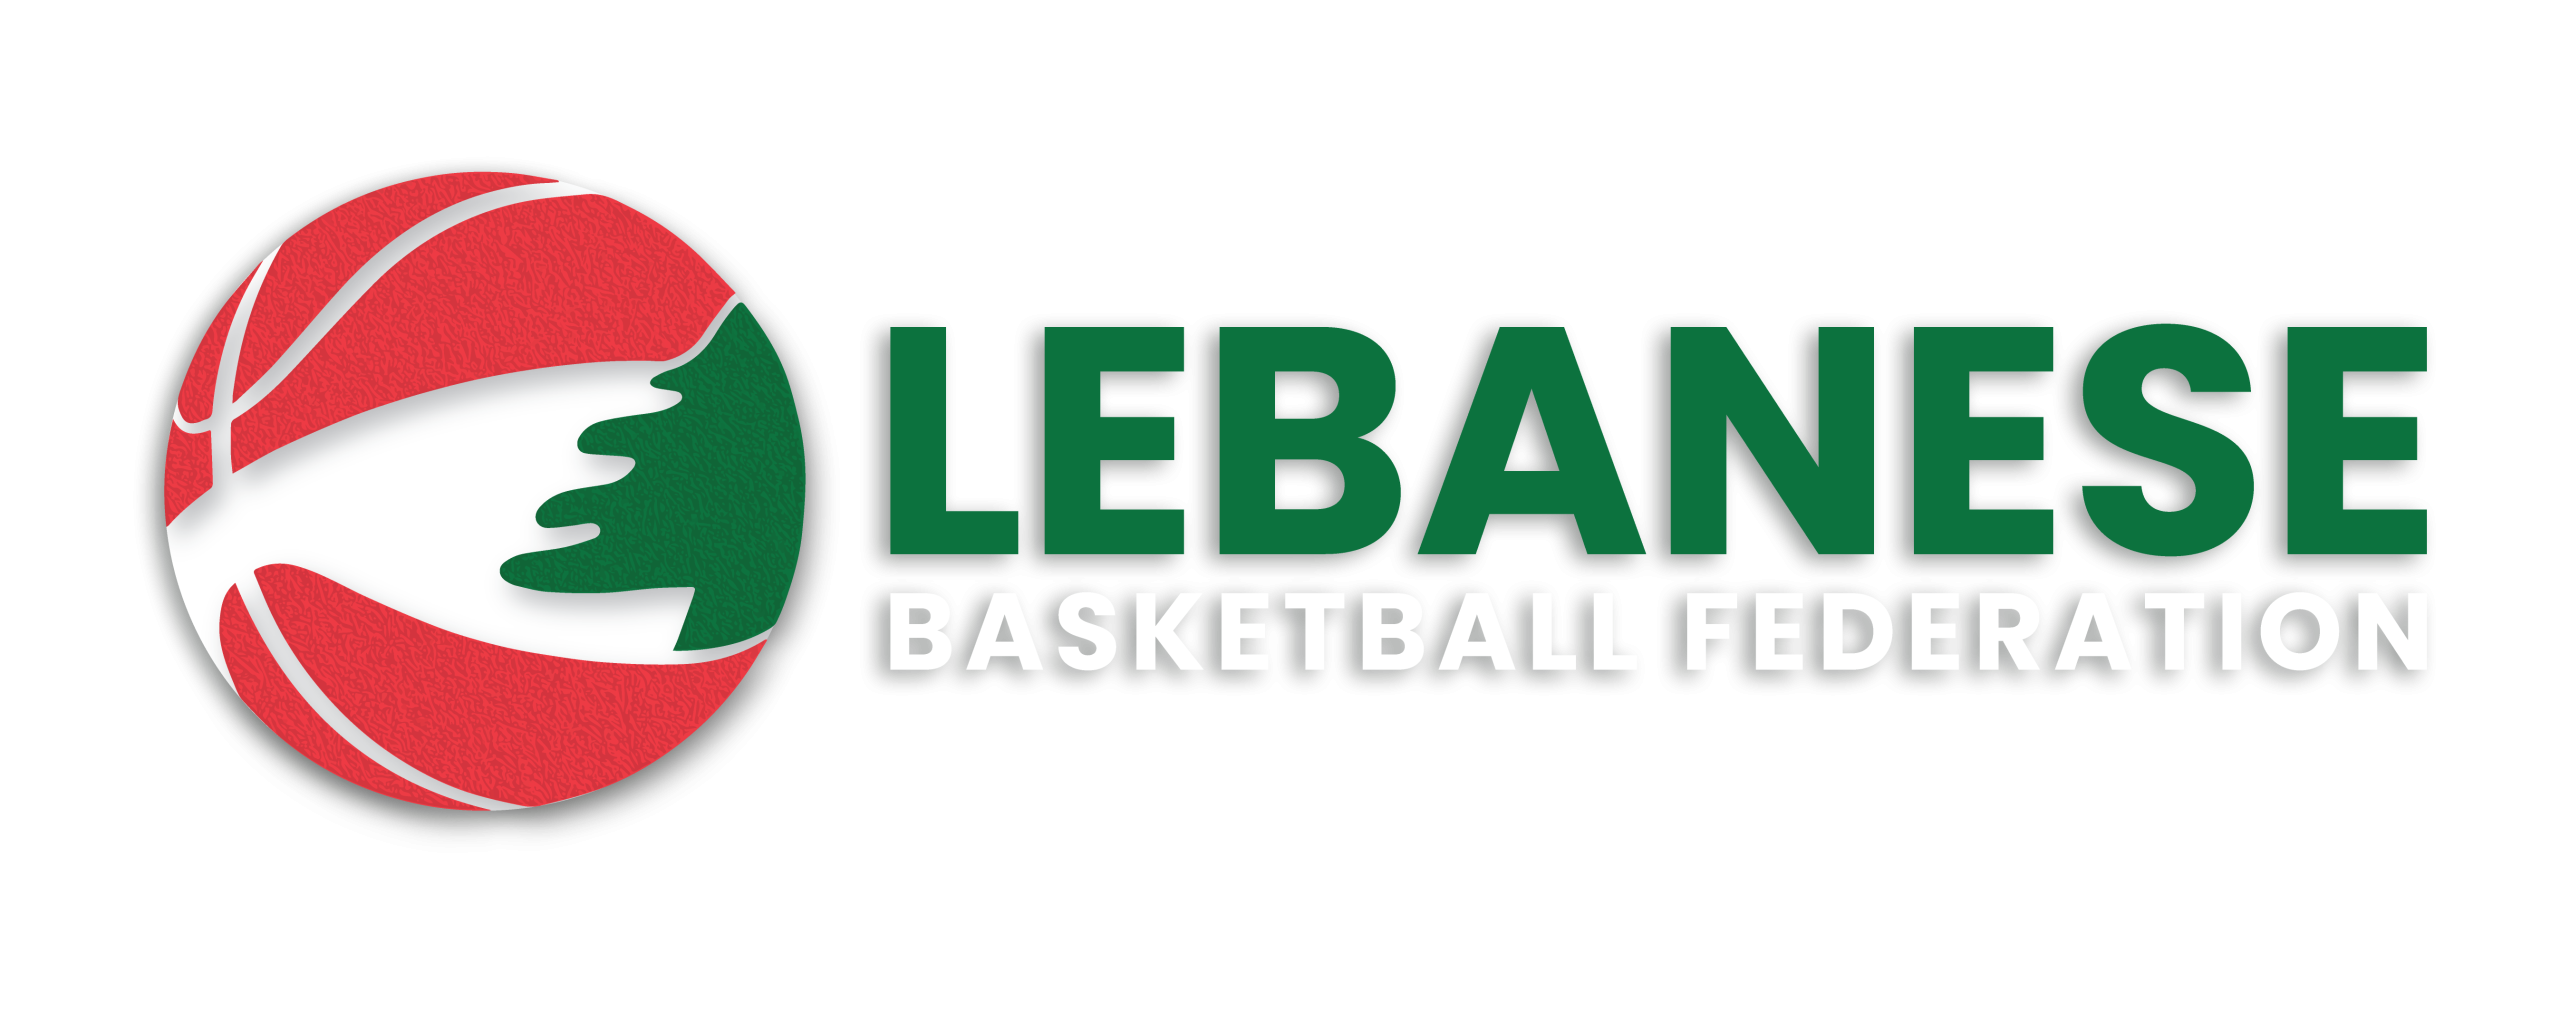 Lebanon Basketball federation